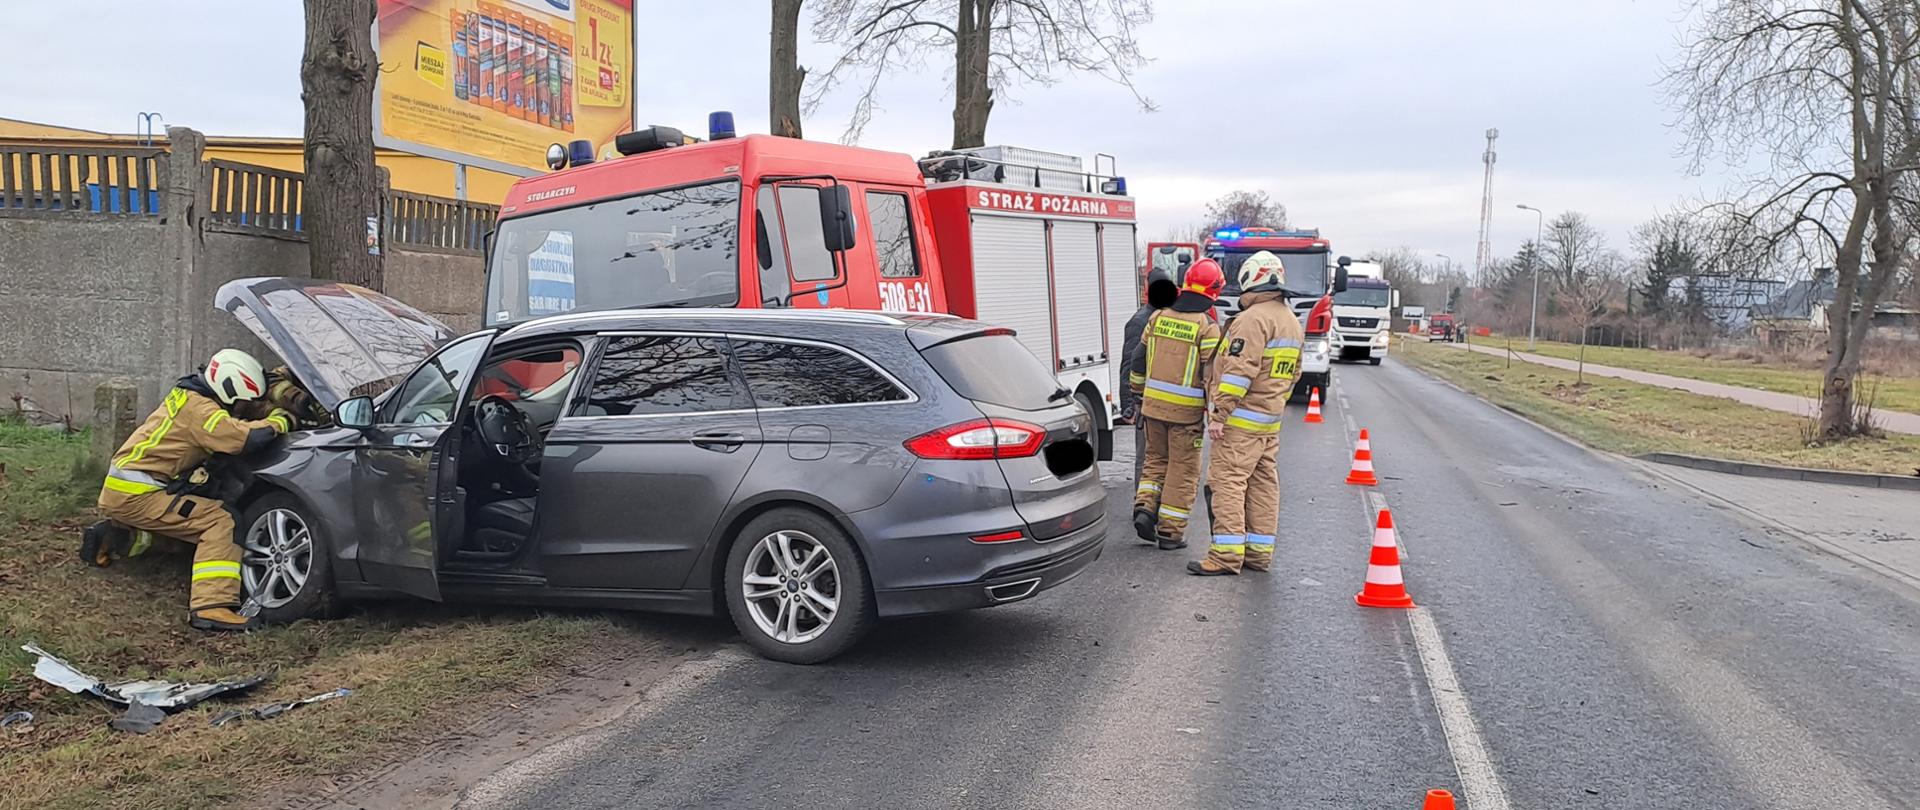 Zdjęcie przedstawia samochód osobowy oraz wóz strażacki po kolizji drogowej oraz strażaków PSP i OSP podczas prowadzonych działań.